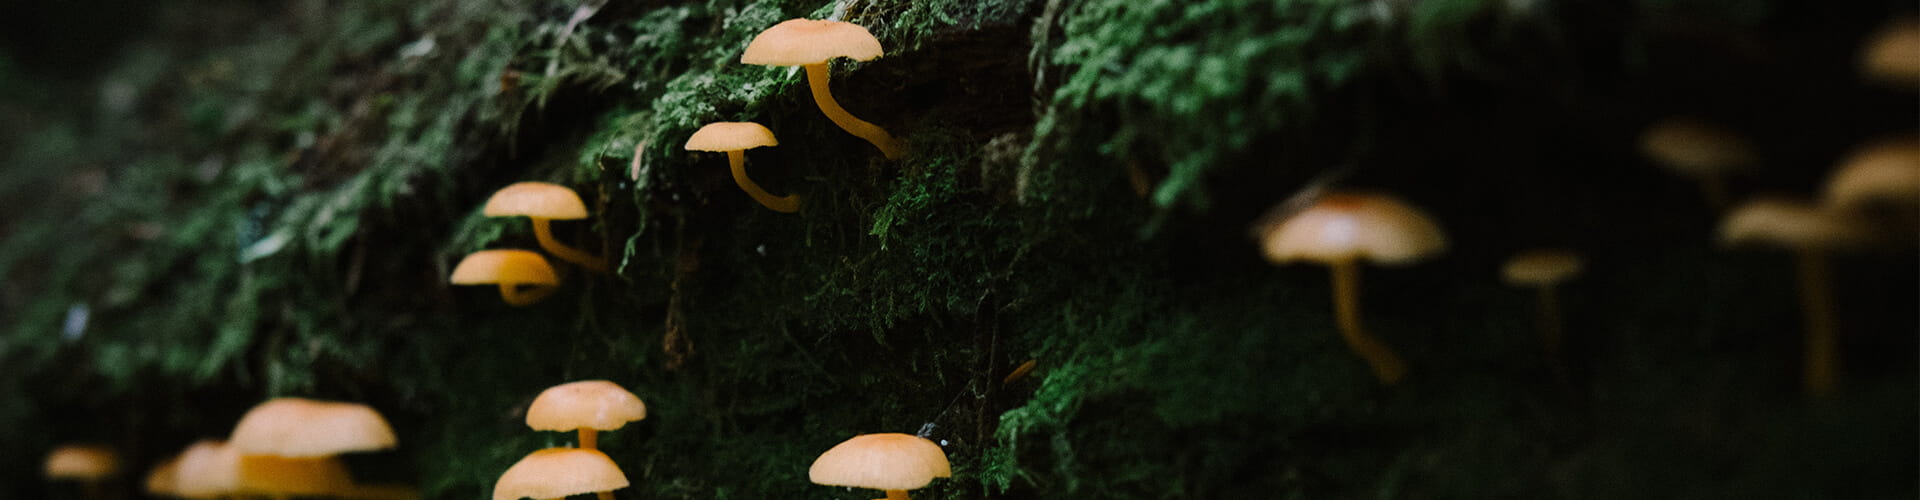 fungi in tree